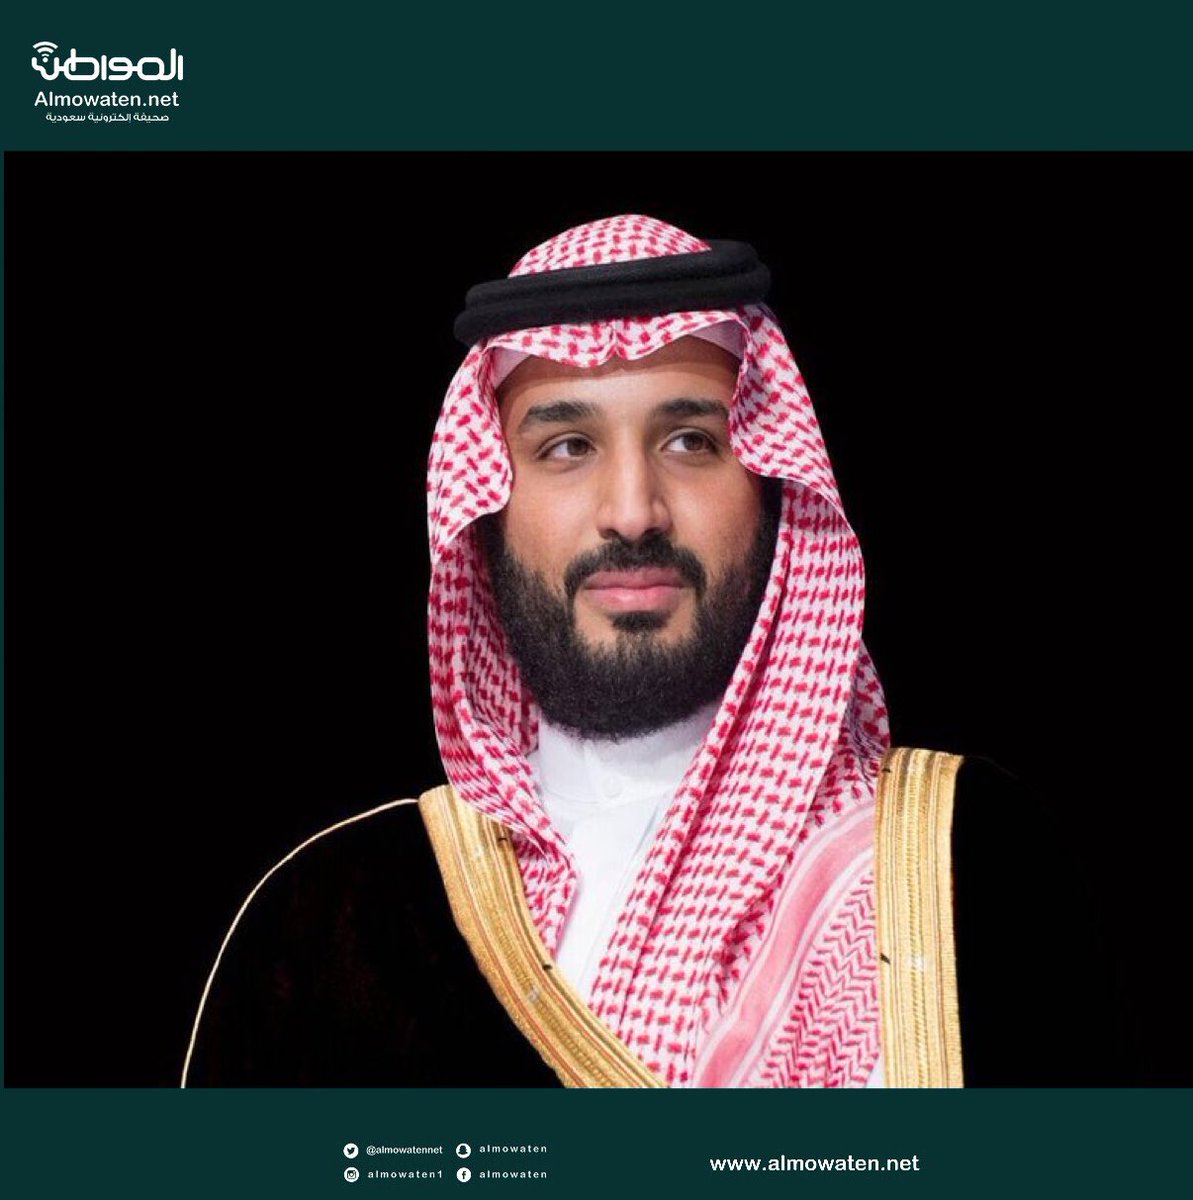 الأمير محمد بن سلمان يدشن المرحلة الأولى من مشروع مدينة الملك سلمان للطاقة (سبارك) الاثنين المقبل